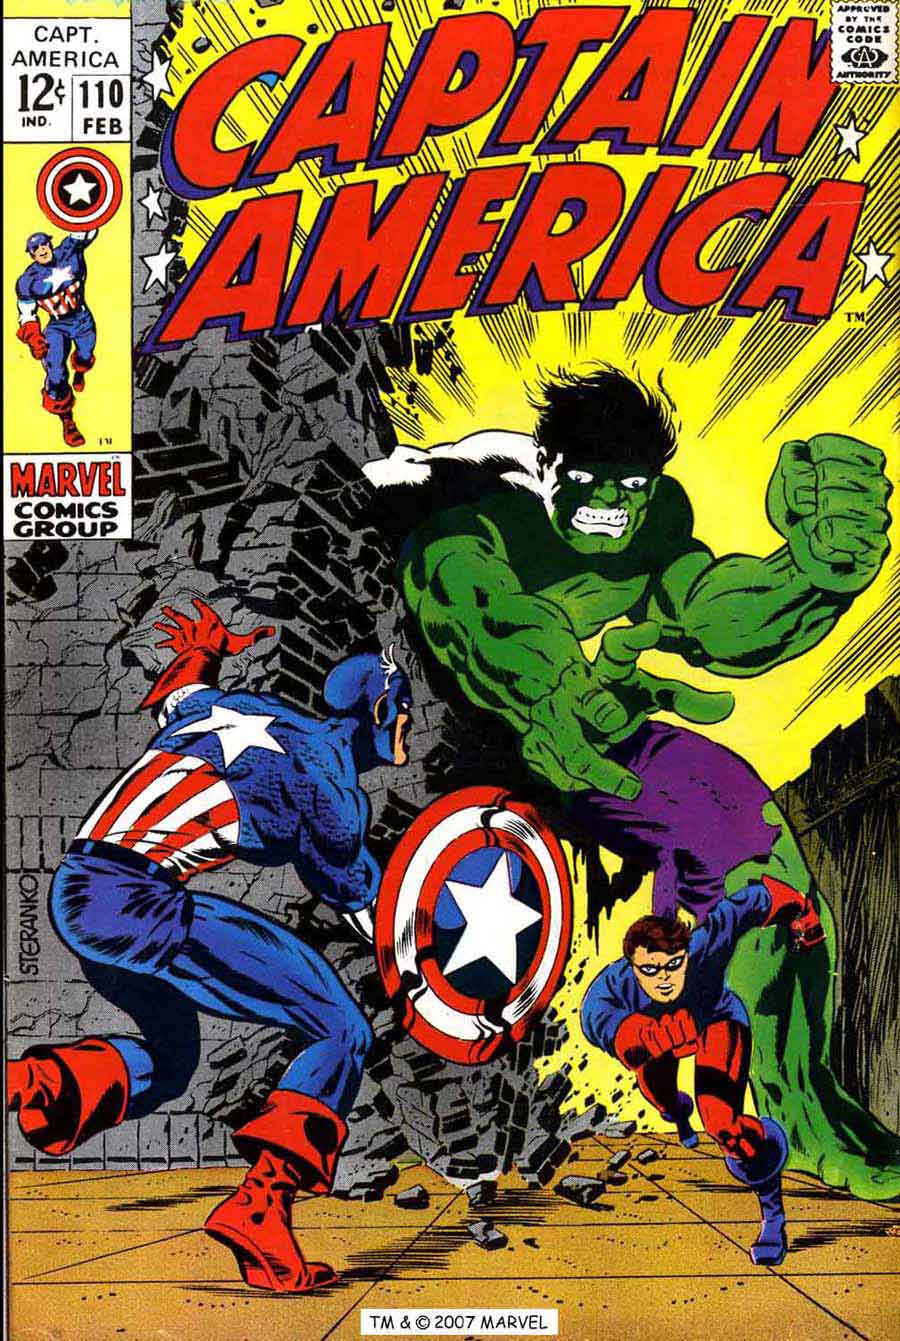 Captain America #110 silver age 1960s marvel comic book cover art by Jim Steranko